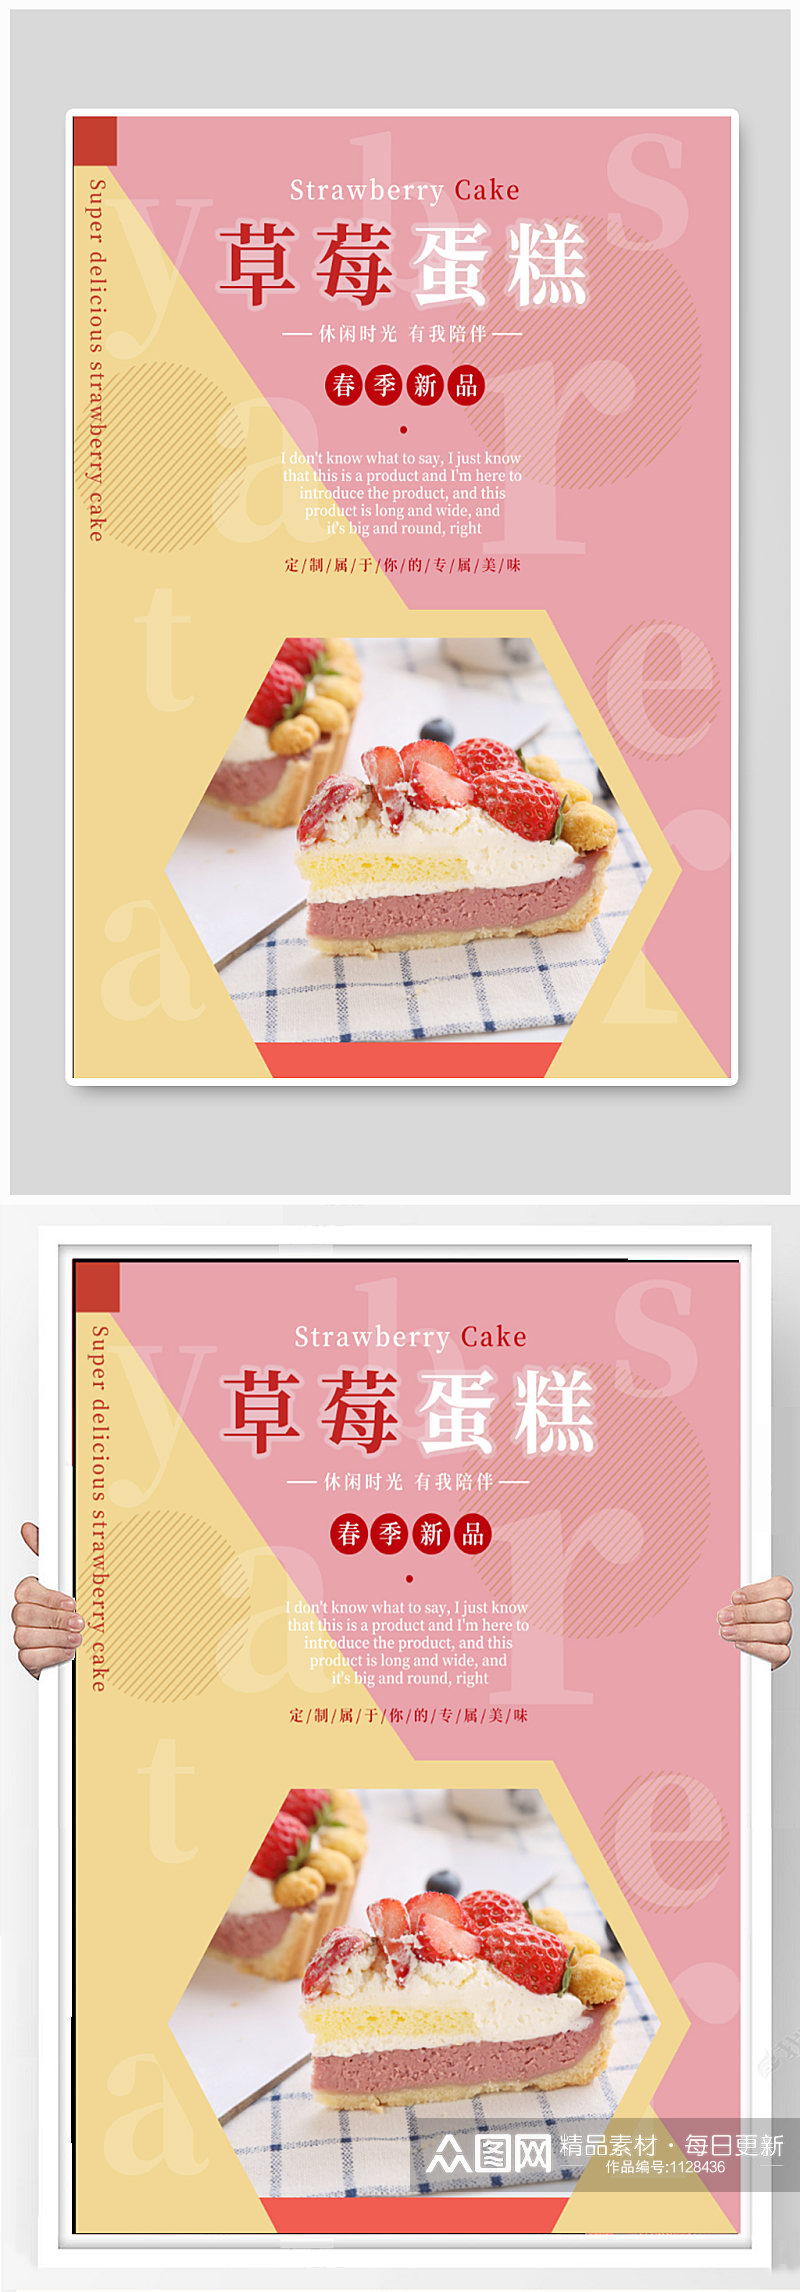 草莓蛋糕蛋糕店海报素材